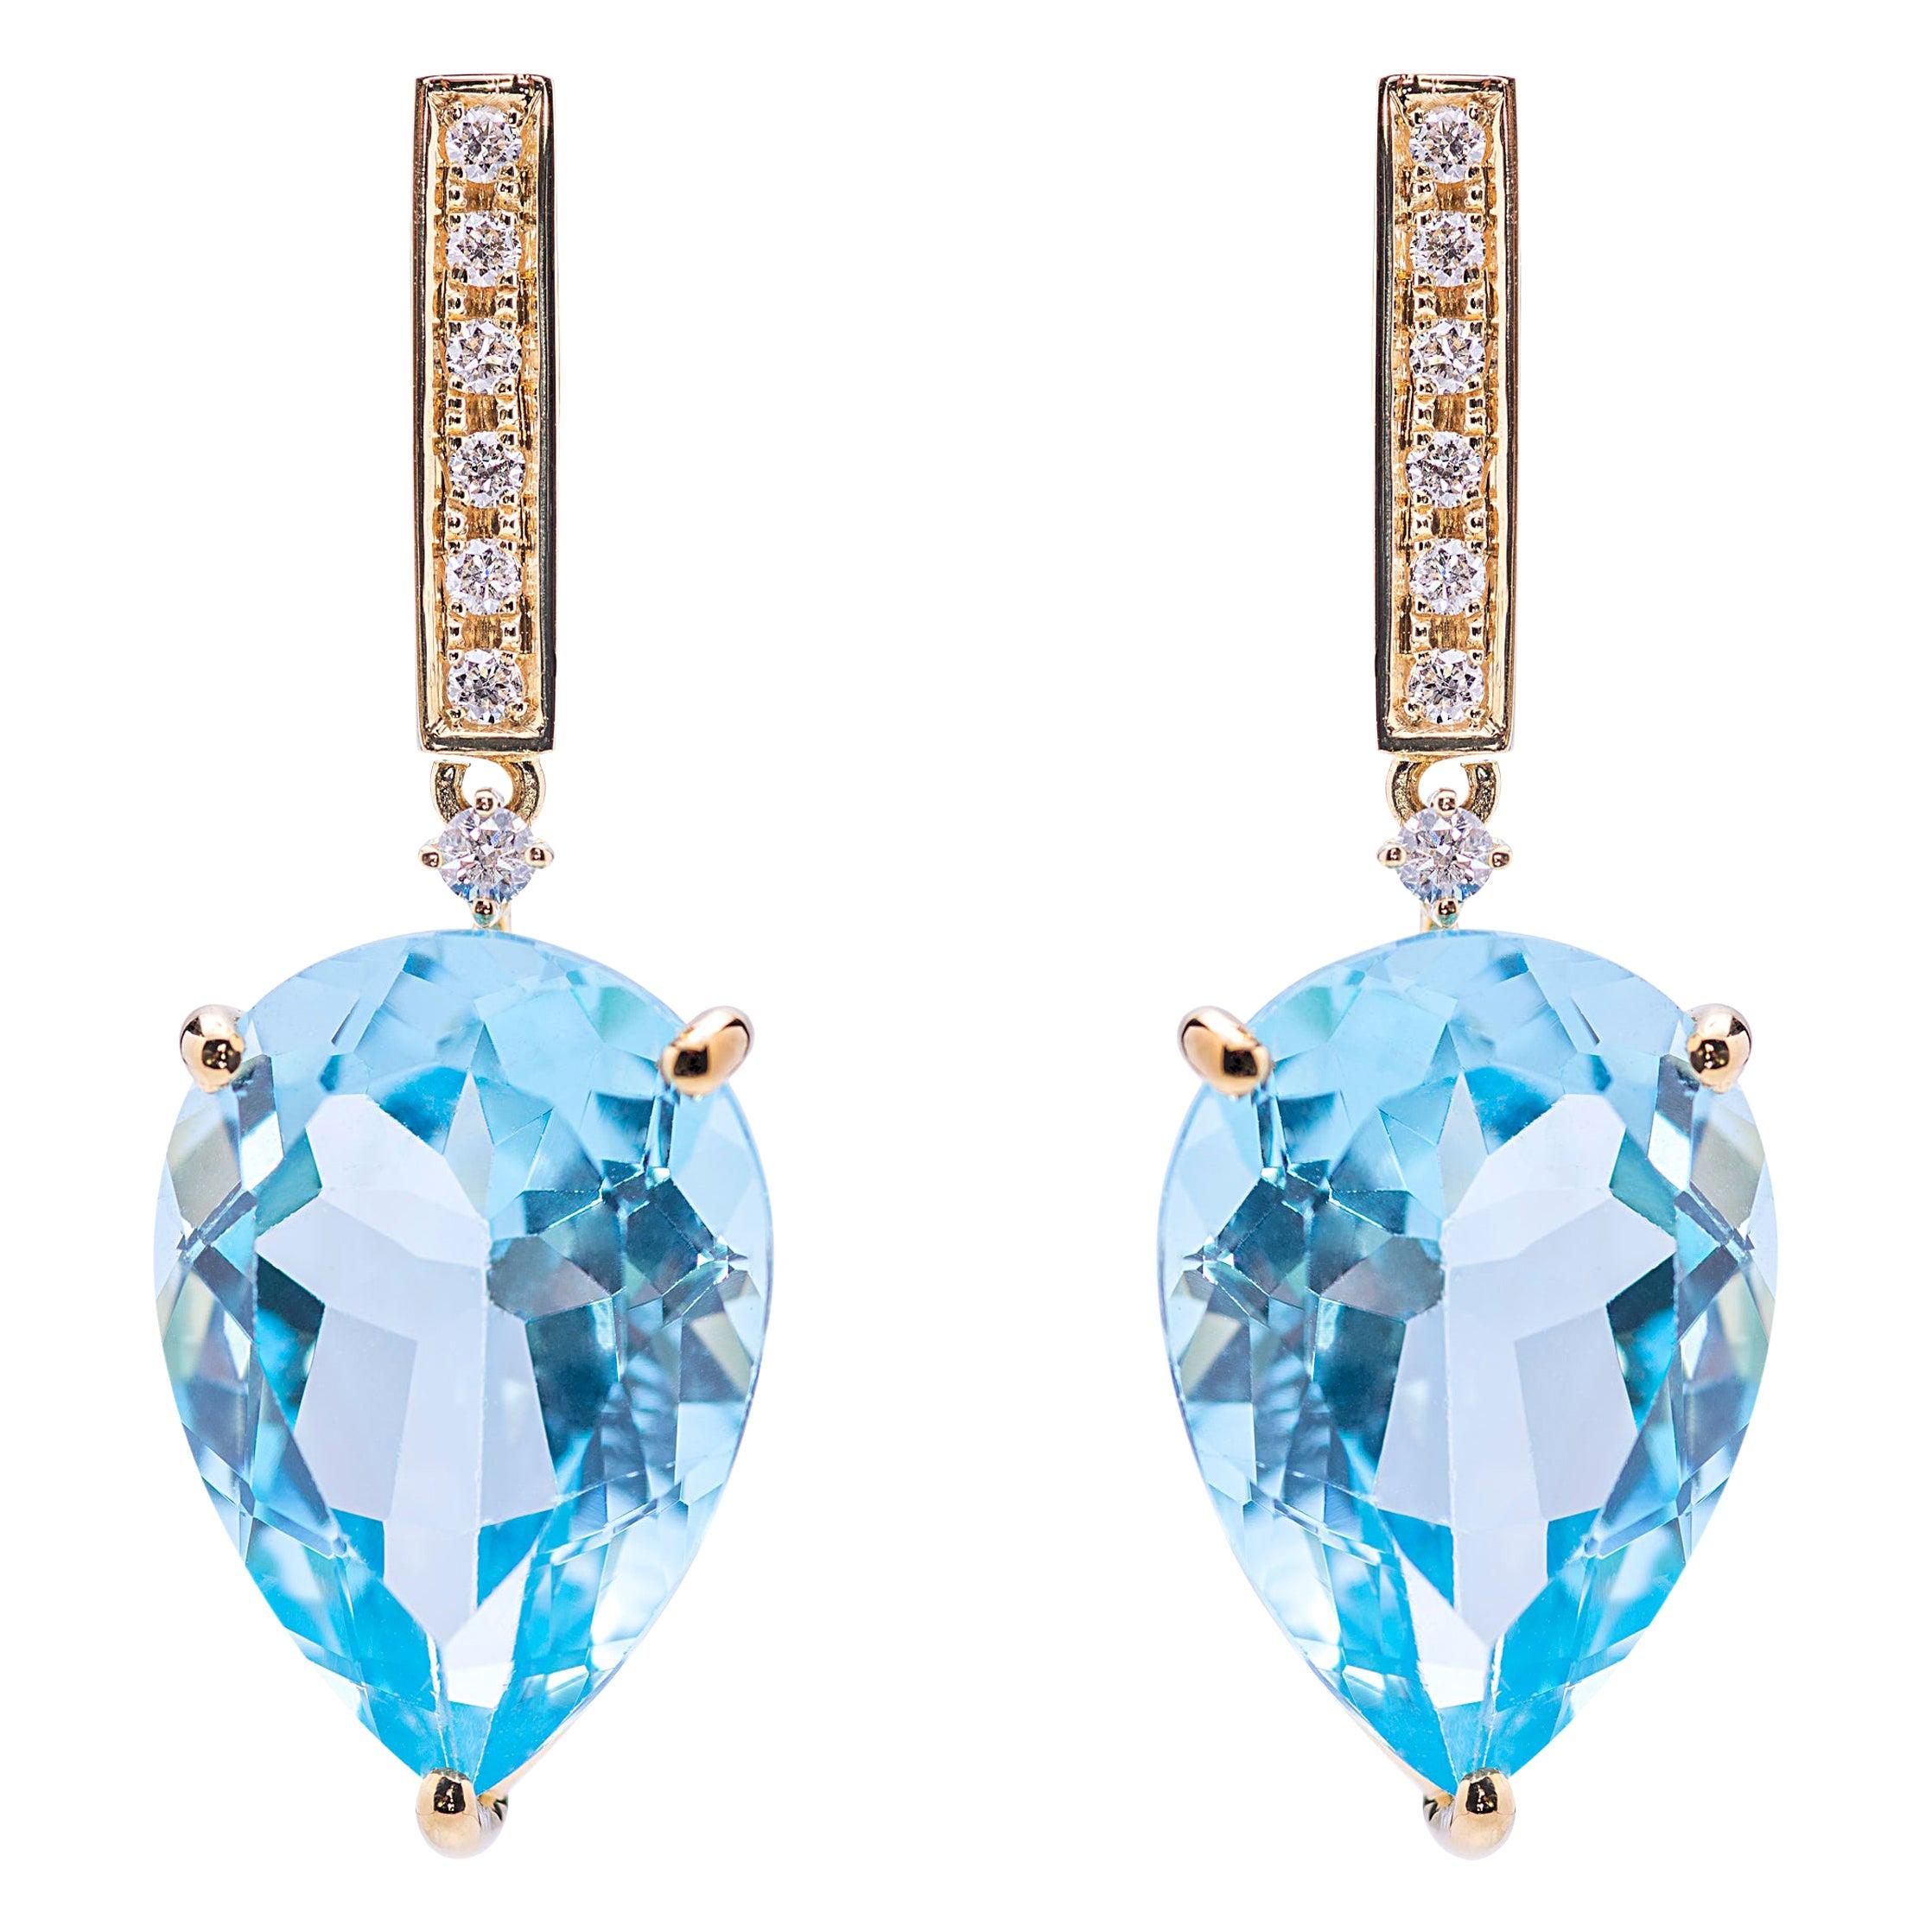 Edition limitée Boucles d'oreilles gouttes de pluie en or 18K Topaze bleue 0.12C Diamants blancs